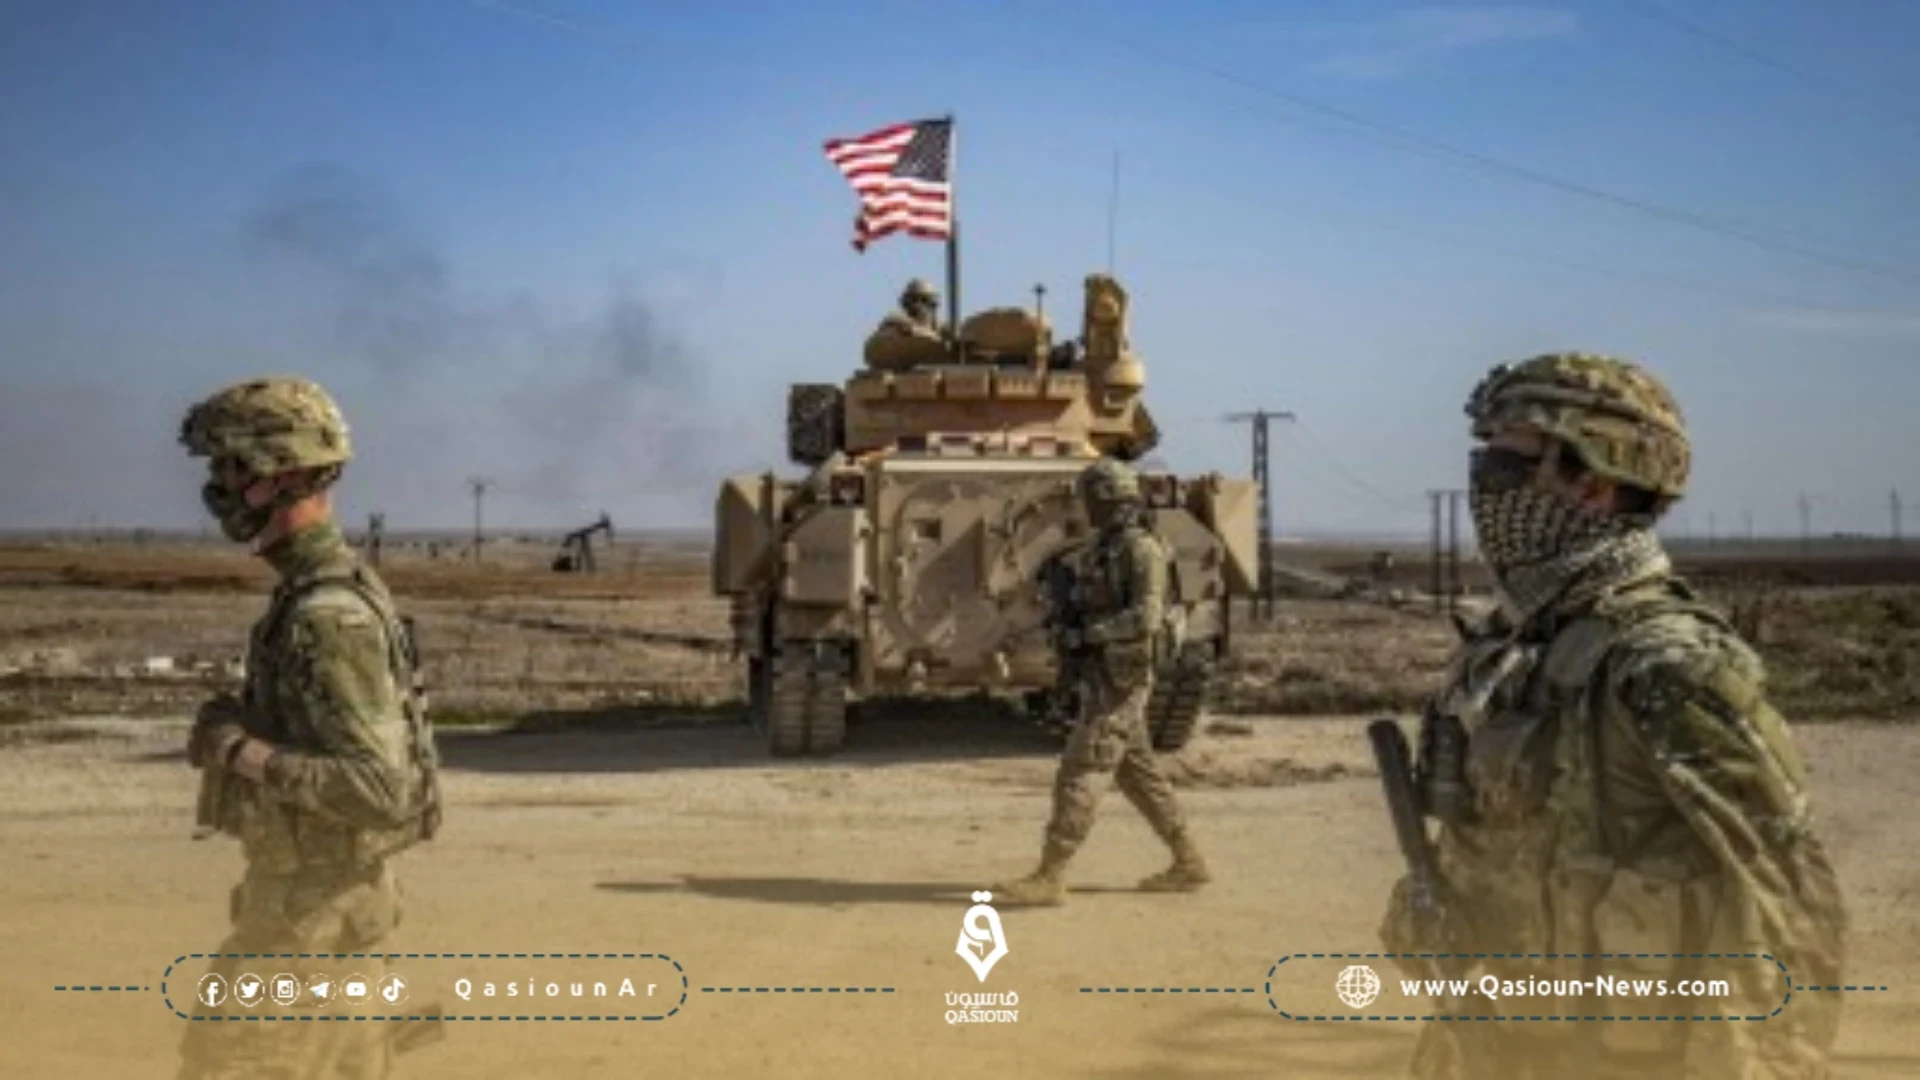 القوات العراقية تبحث مع الولايات المتحدة صياغة جدول زمني لسحب قواتها